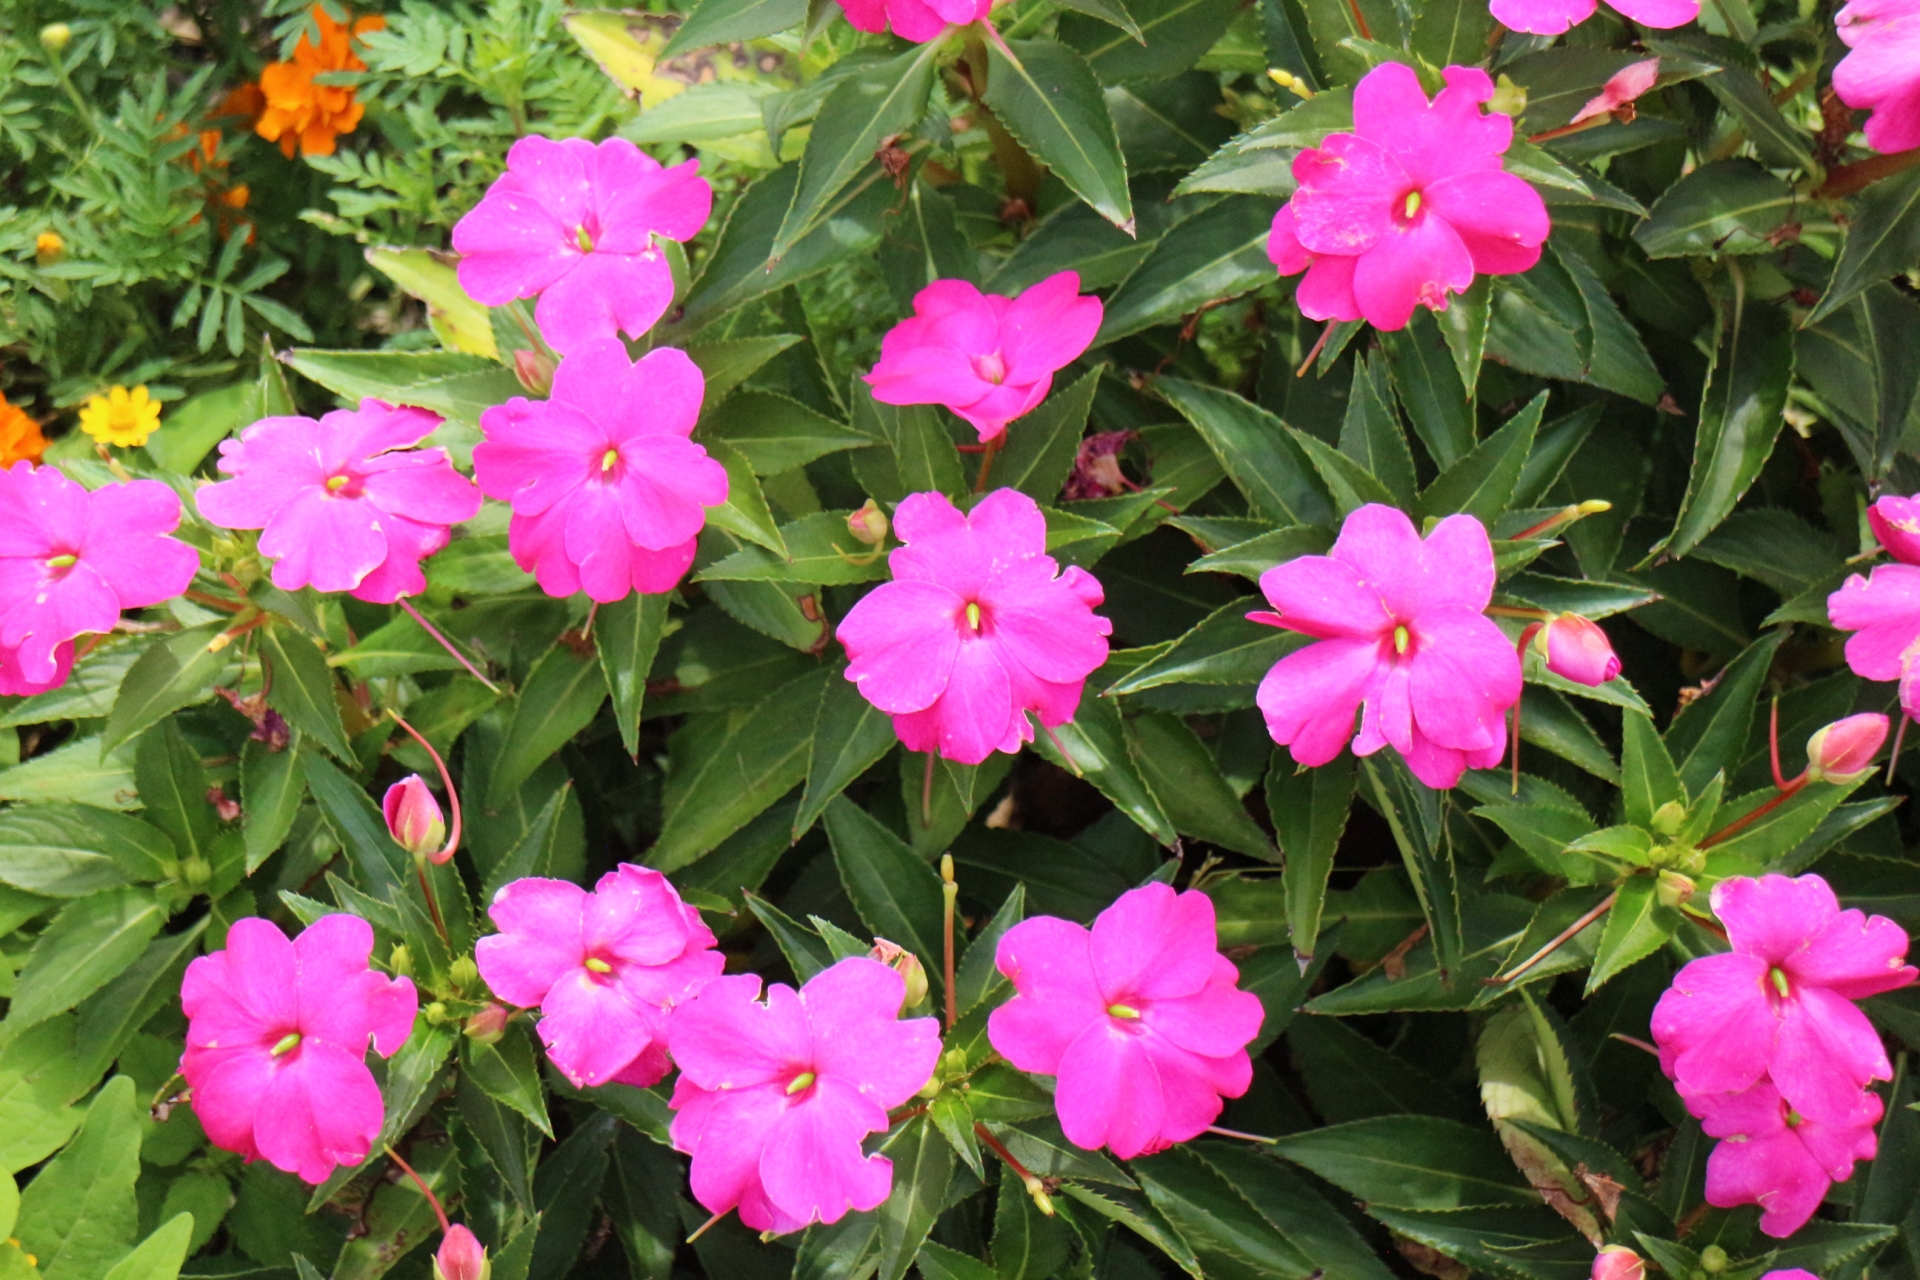 オルレアとは 花の特徴 花言葉 育て方 手入れ方法を紹介 Hanasaku